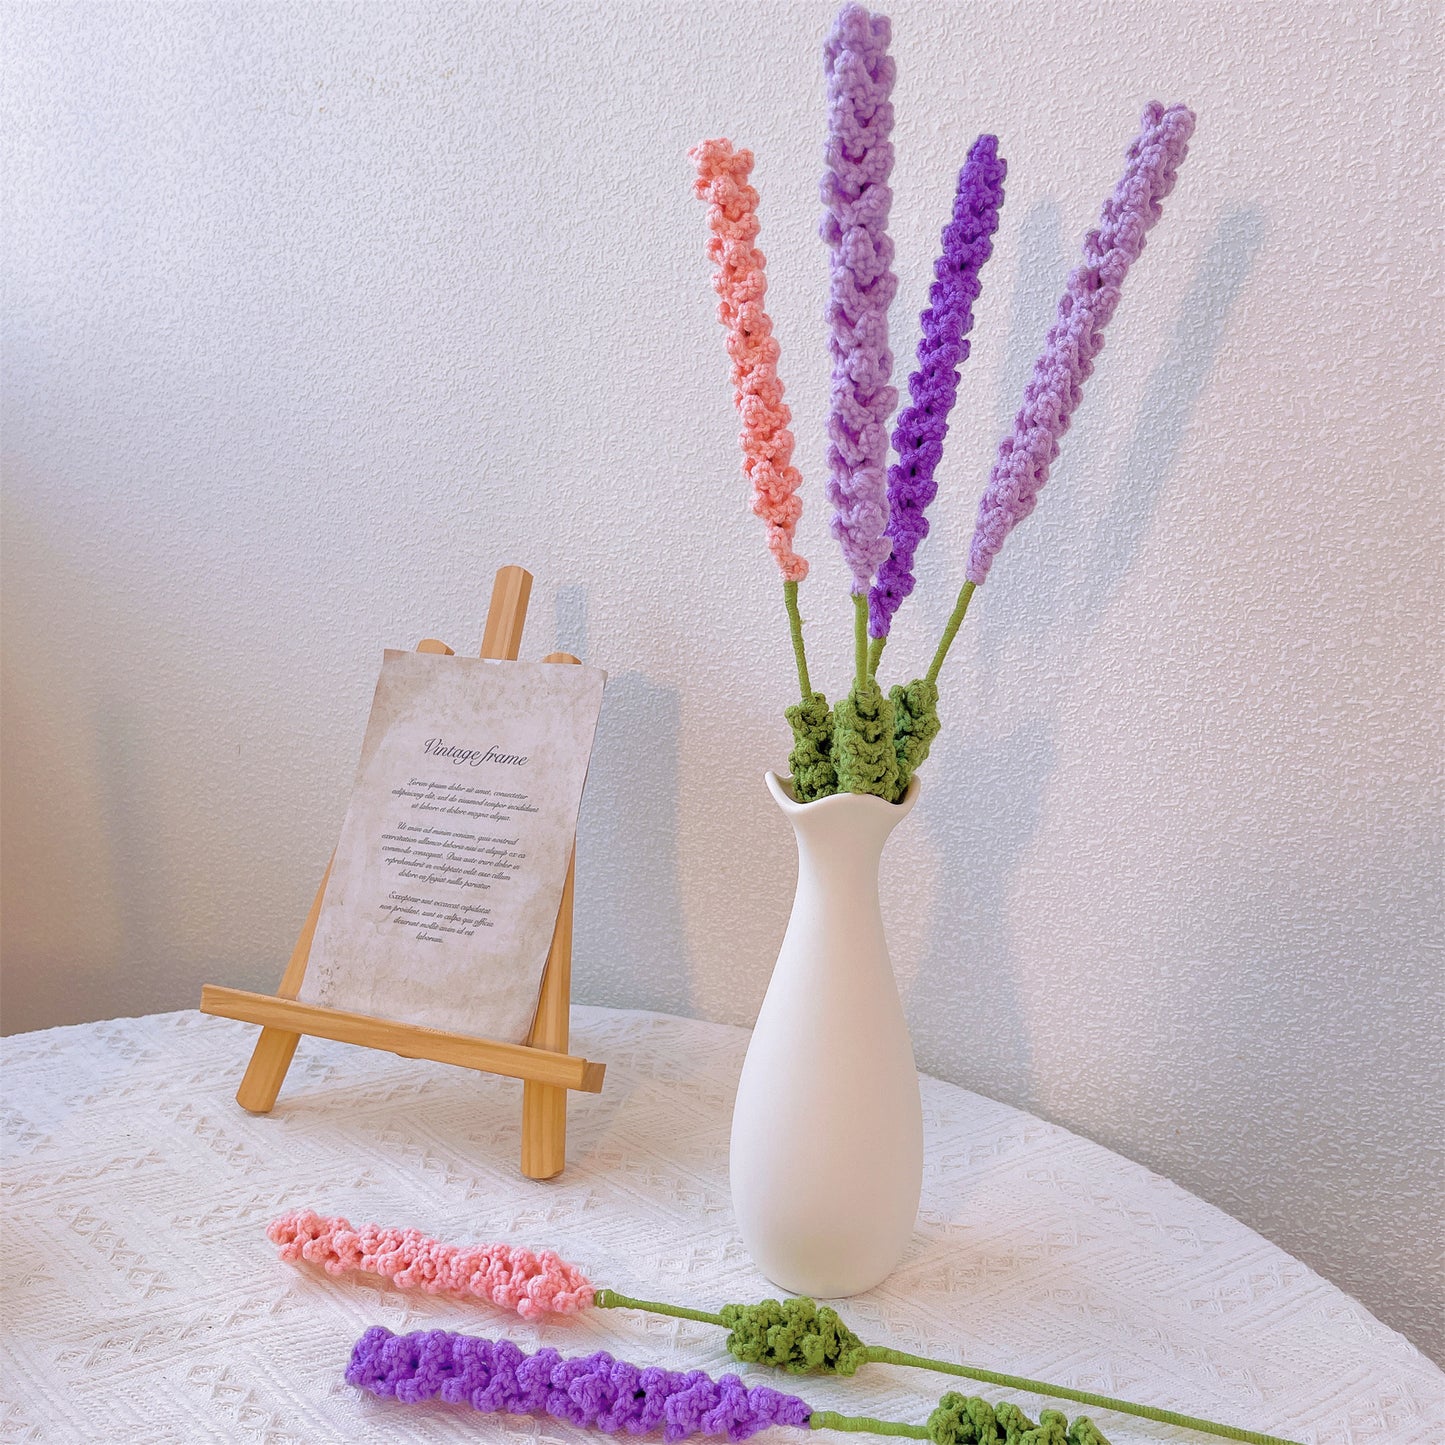 Lavendel-Gelassenheit: Handgefertigter gehäkelter Lavendel-Blumenstecker für eine beruhigende Gartendekoration